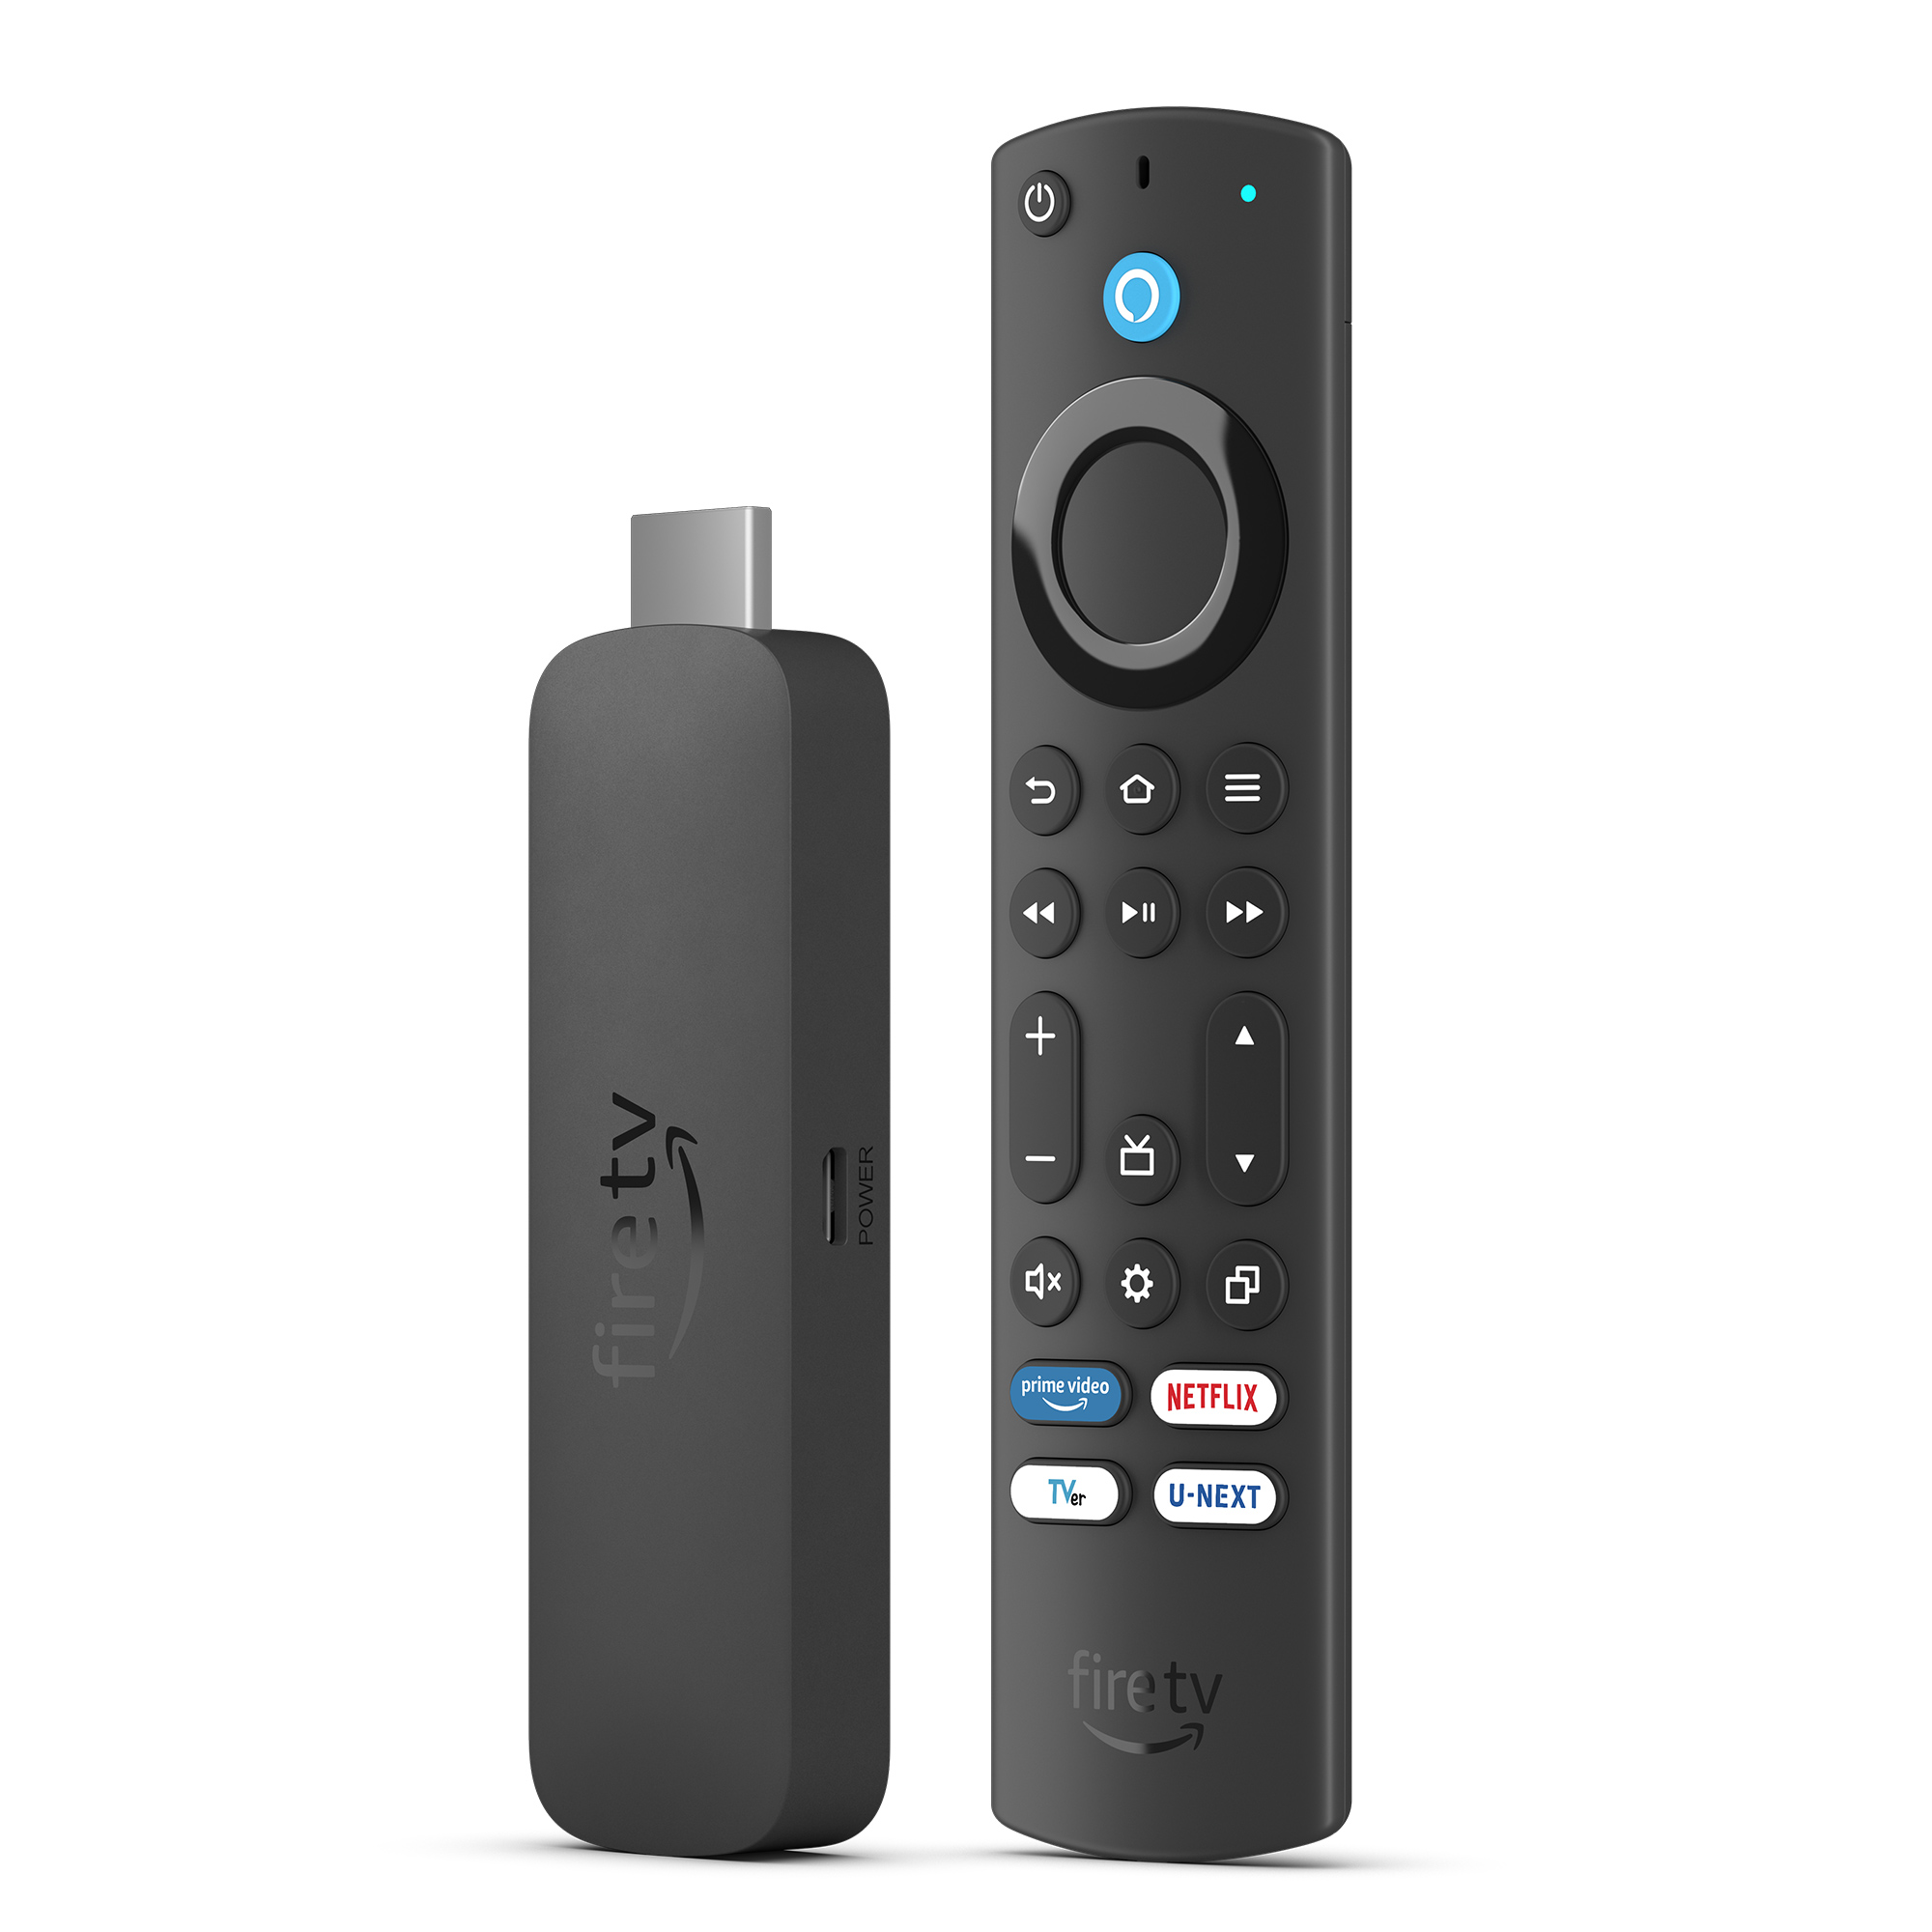 Amazon 4K対応 Fire TV stick 3台